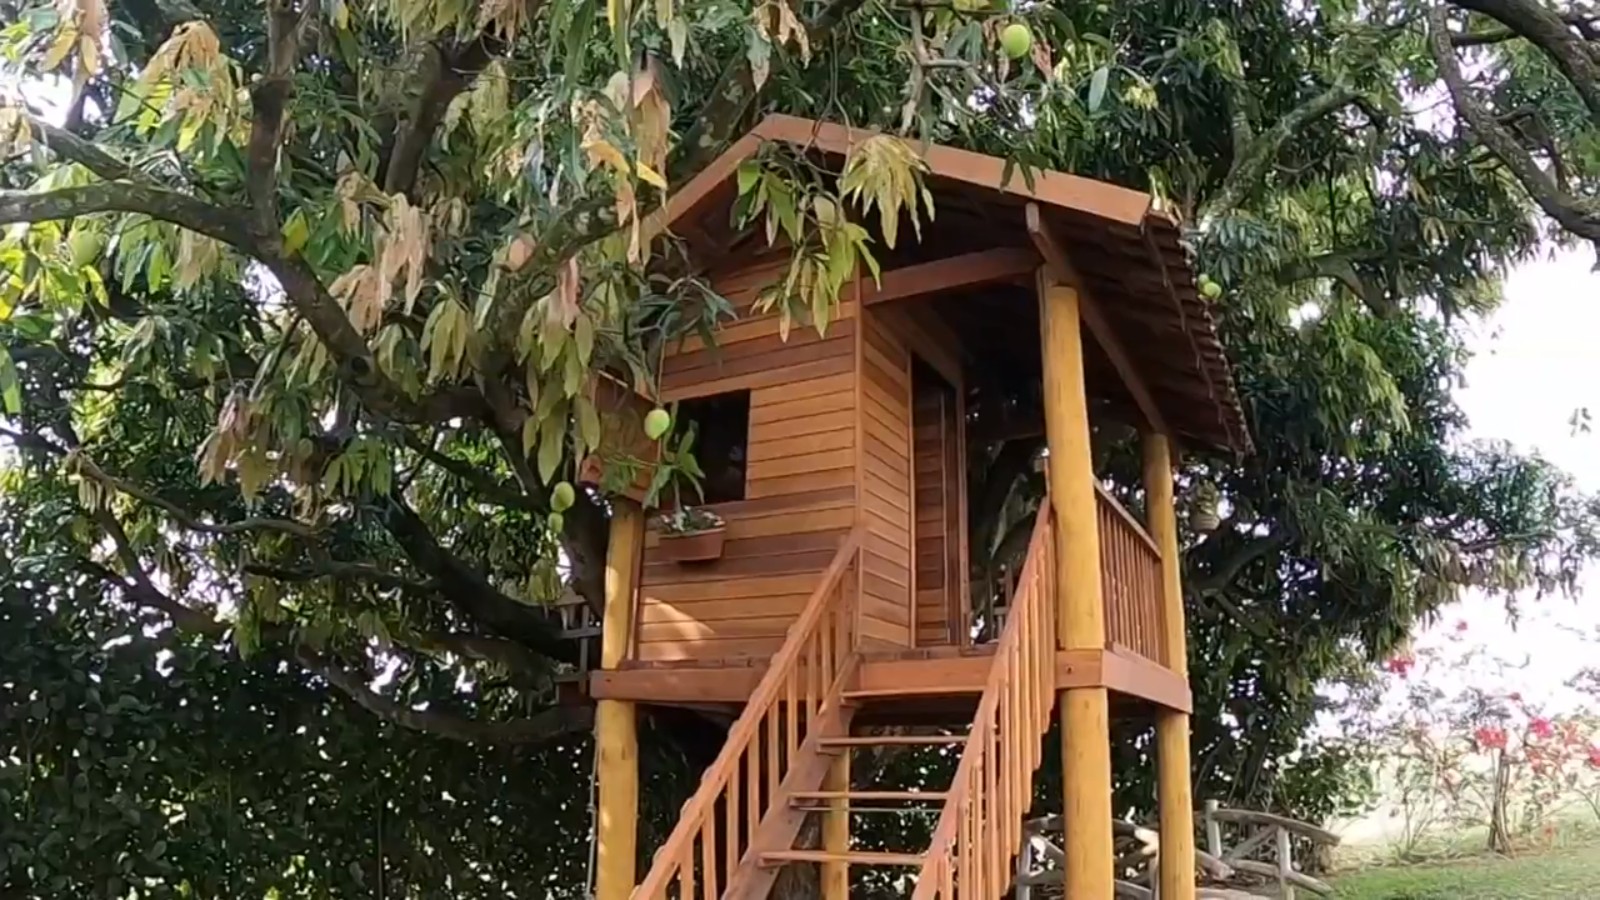 Inspirados por filhos e netos, moradores realizam sonho de infância e constroem casas em árvores: 'Nunca mais quero morar no chão'